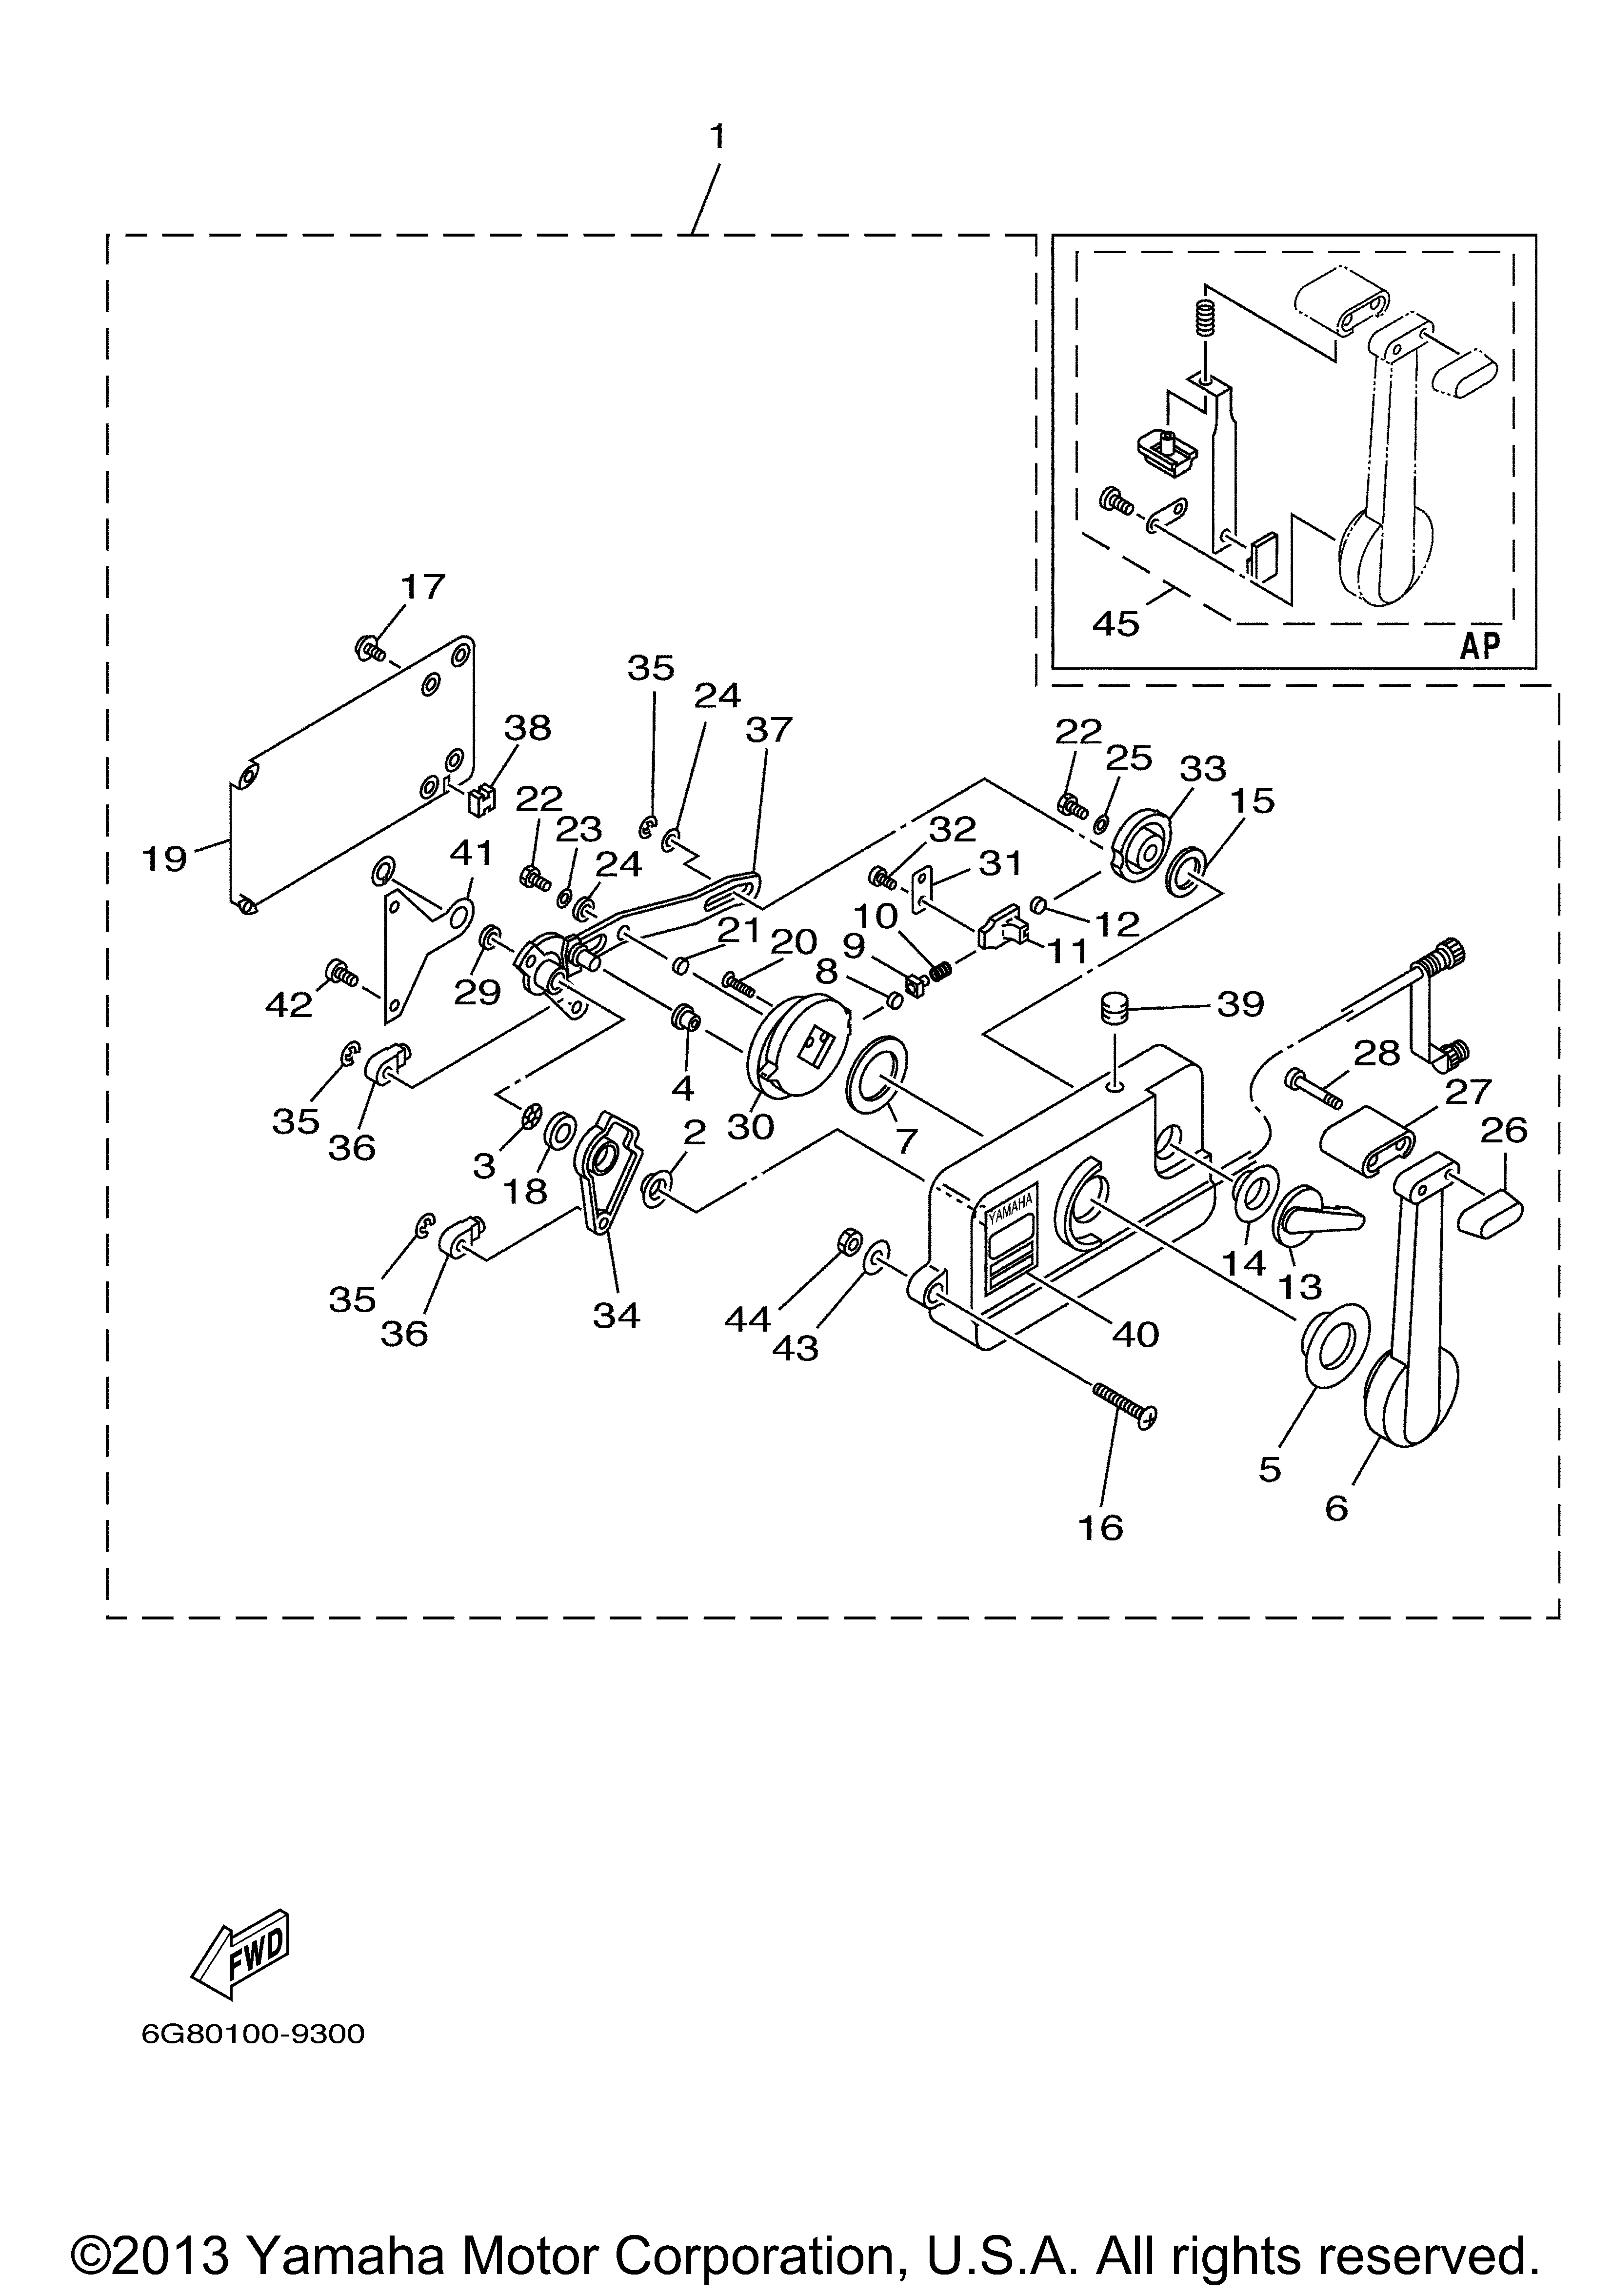 Yamaha Outboard Motor Parts Diagram